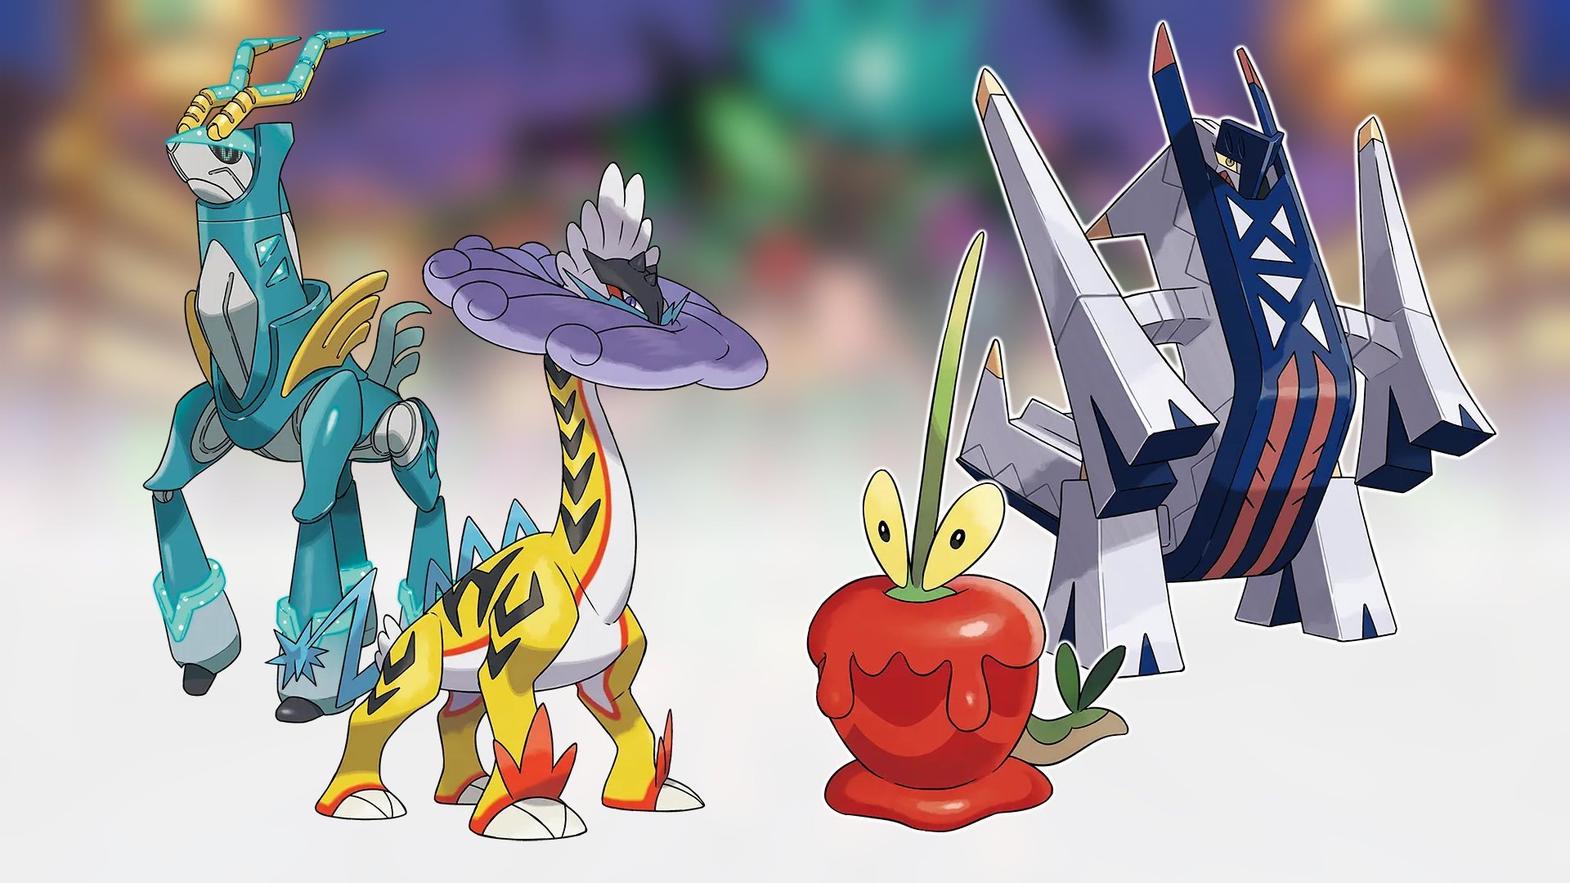 Pokémon e funcionalidades revelados para Scarlet e Violet